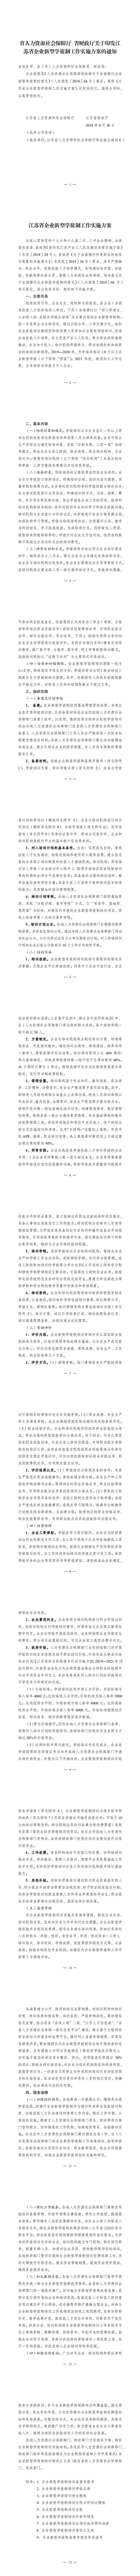 27-江苏省企业新型学徒制工作实施方案（印发稿）_看图王_0.jpg